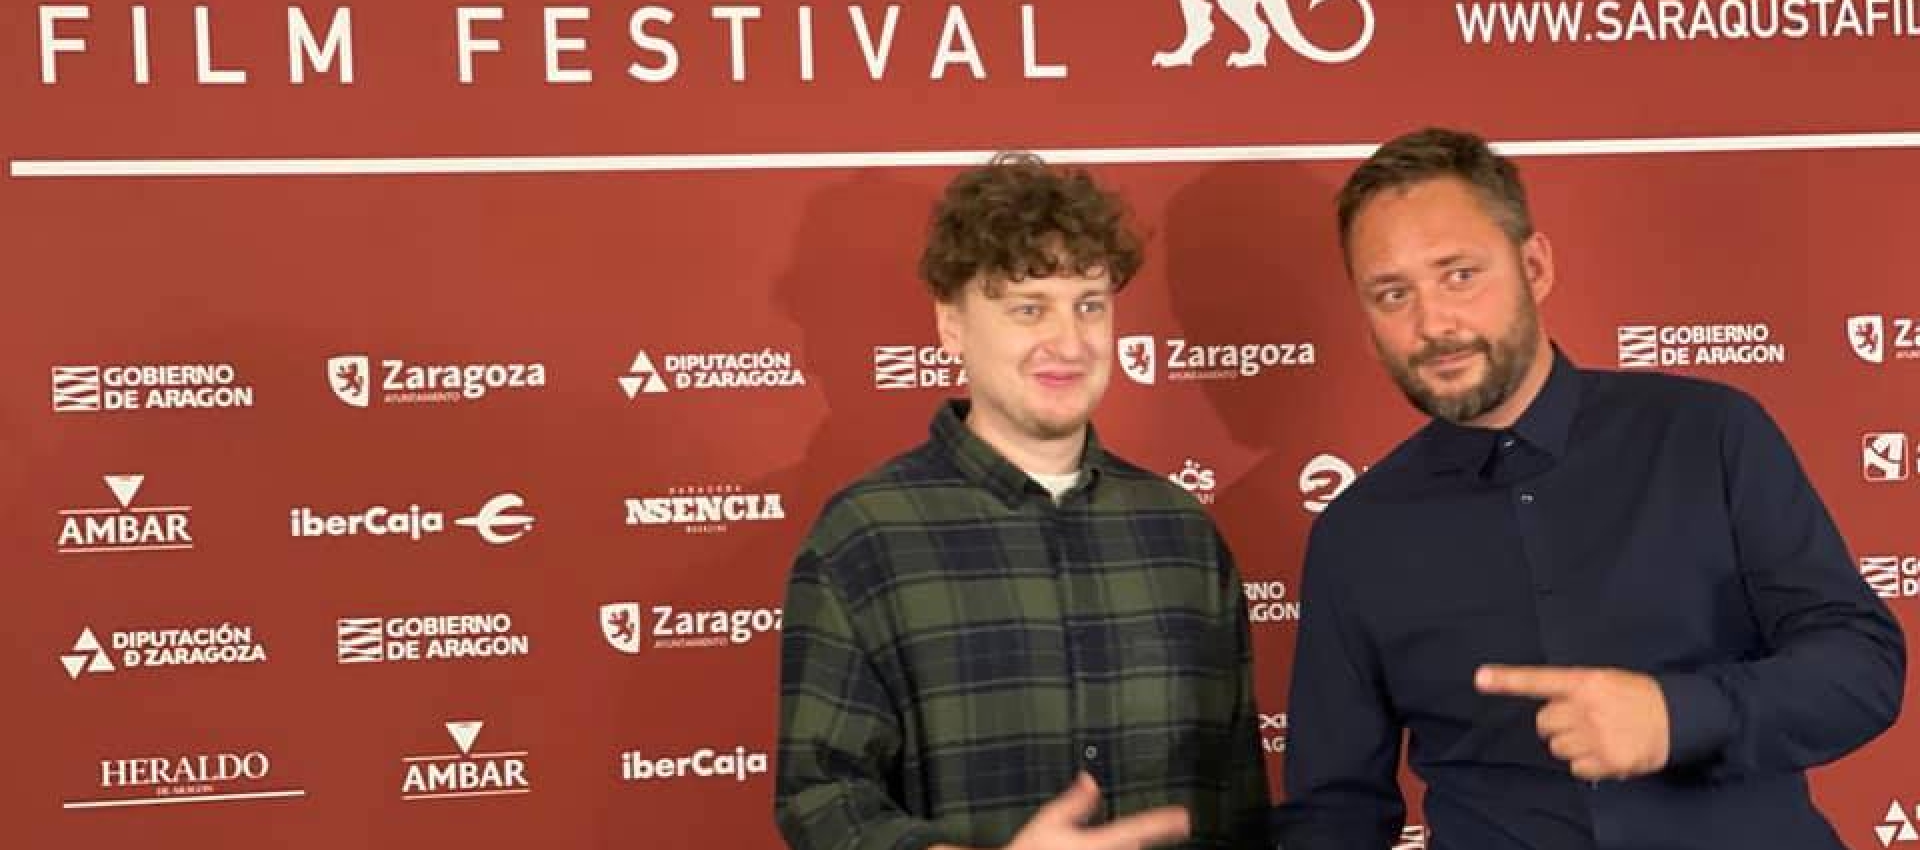  Безславні кріпаки отримали премію журі фестивалю Saraqusta Film Festival 